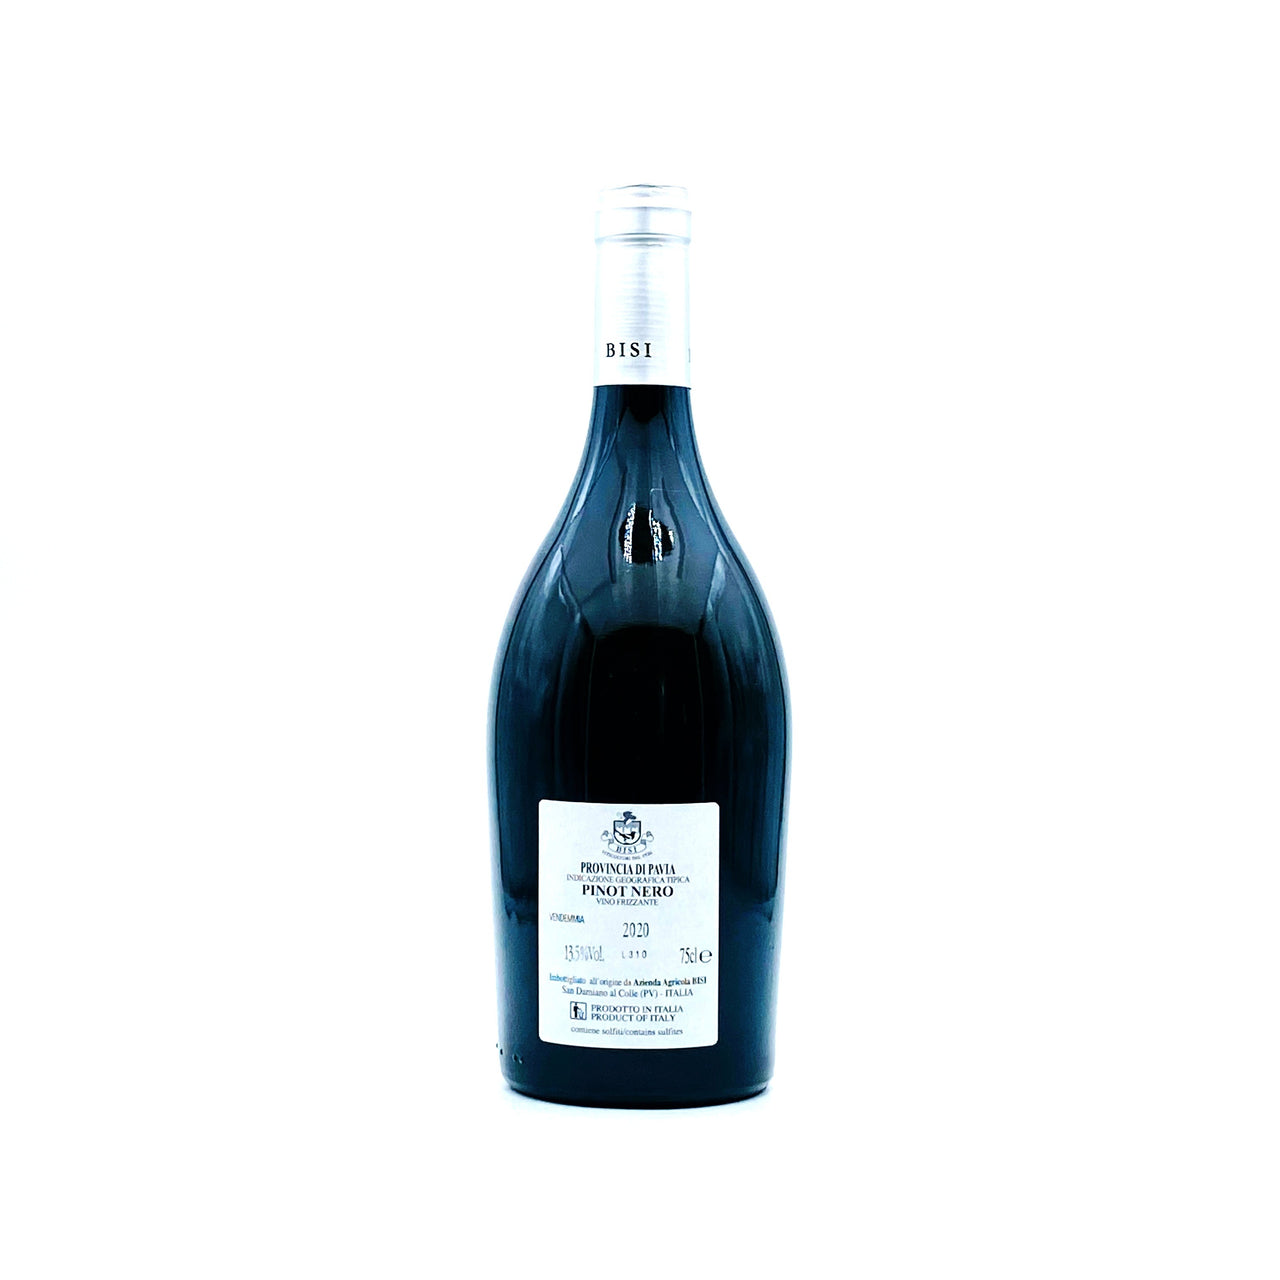 IL PECCATORE - PINOT NERO vinificato in bianco Igt - (frizzante) - Rosato Vini